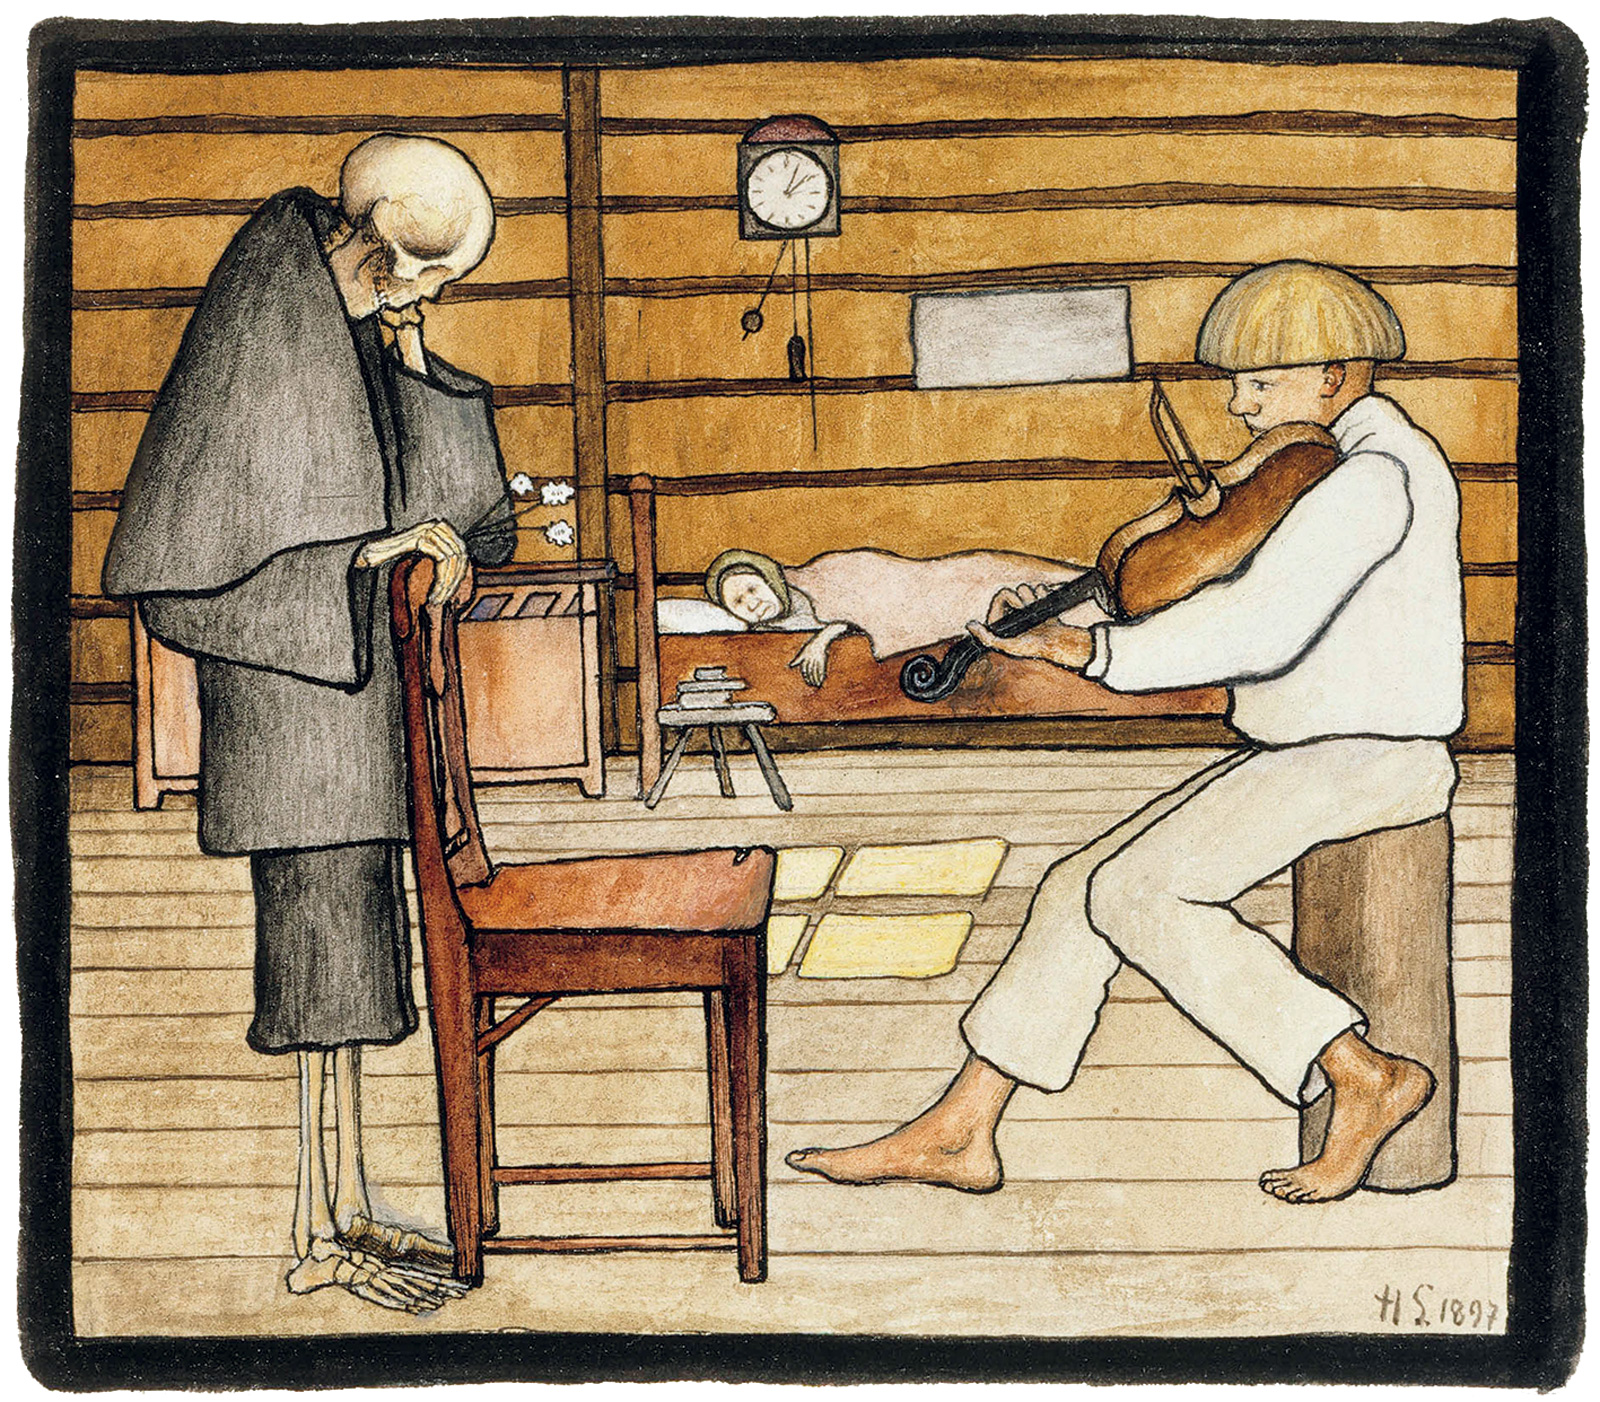 Hugo Simberg, *La muerte lo escucha todo*, 1897. Suomen Kansallisgalleria 